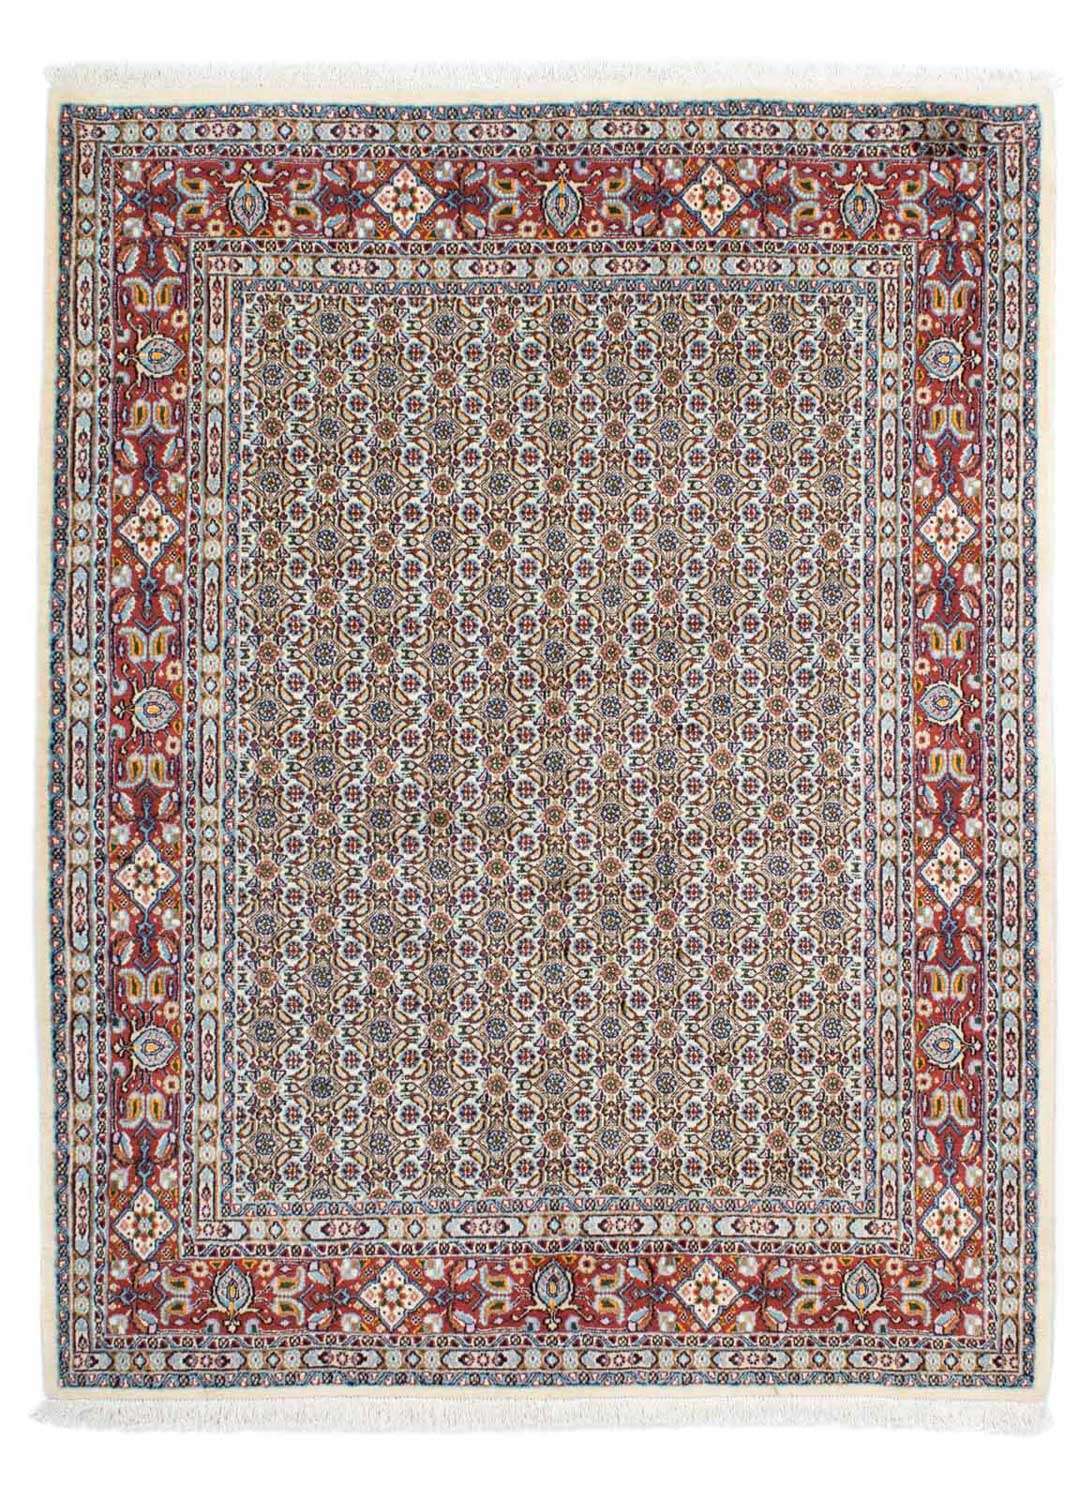 Dywan perski - Klasyczny - 192 x 150 cm - beżowy